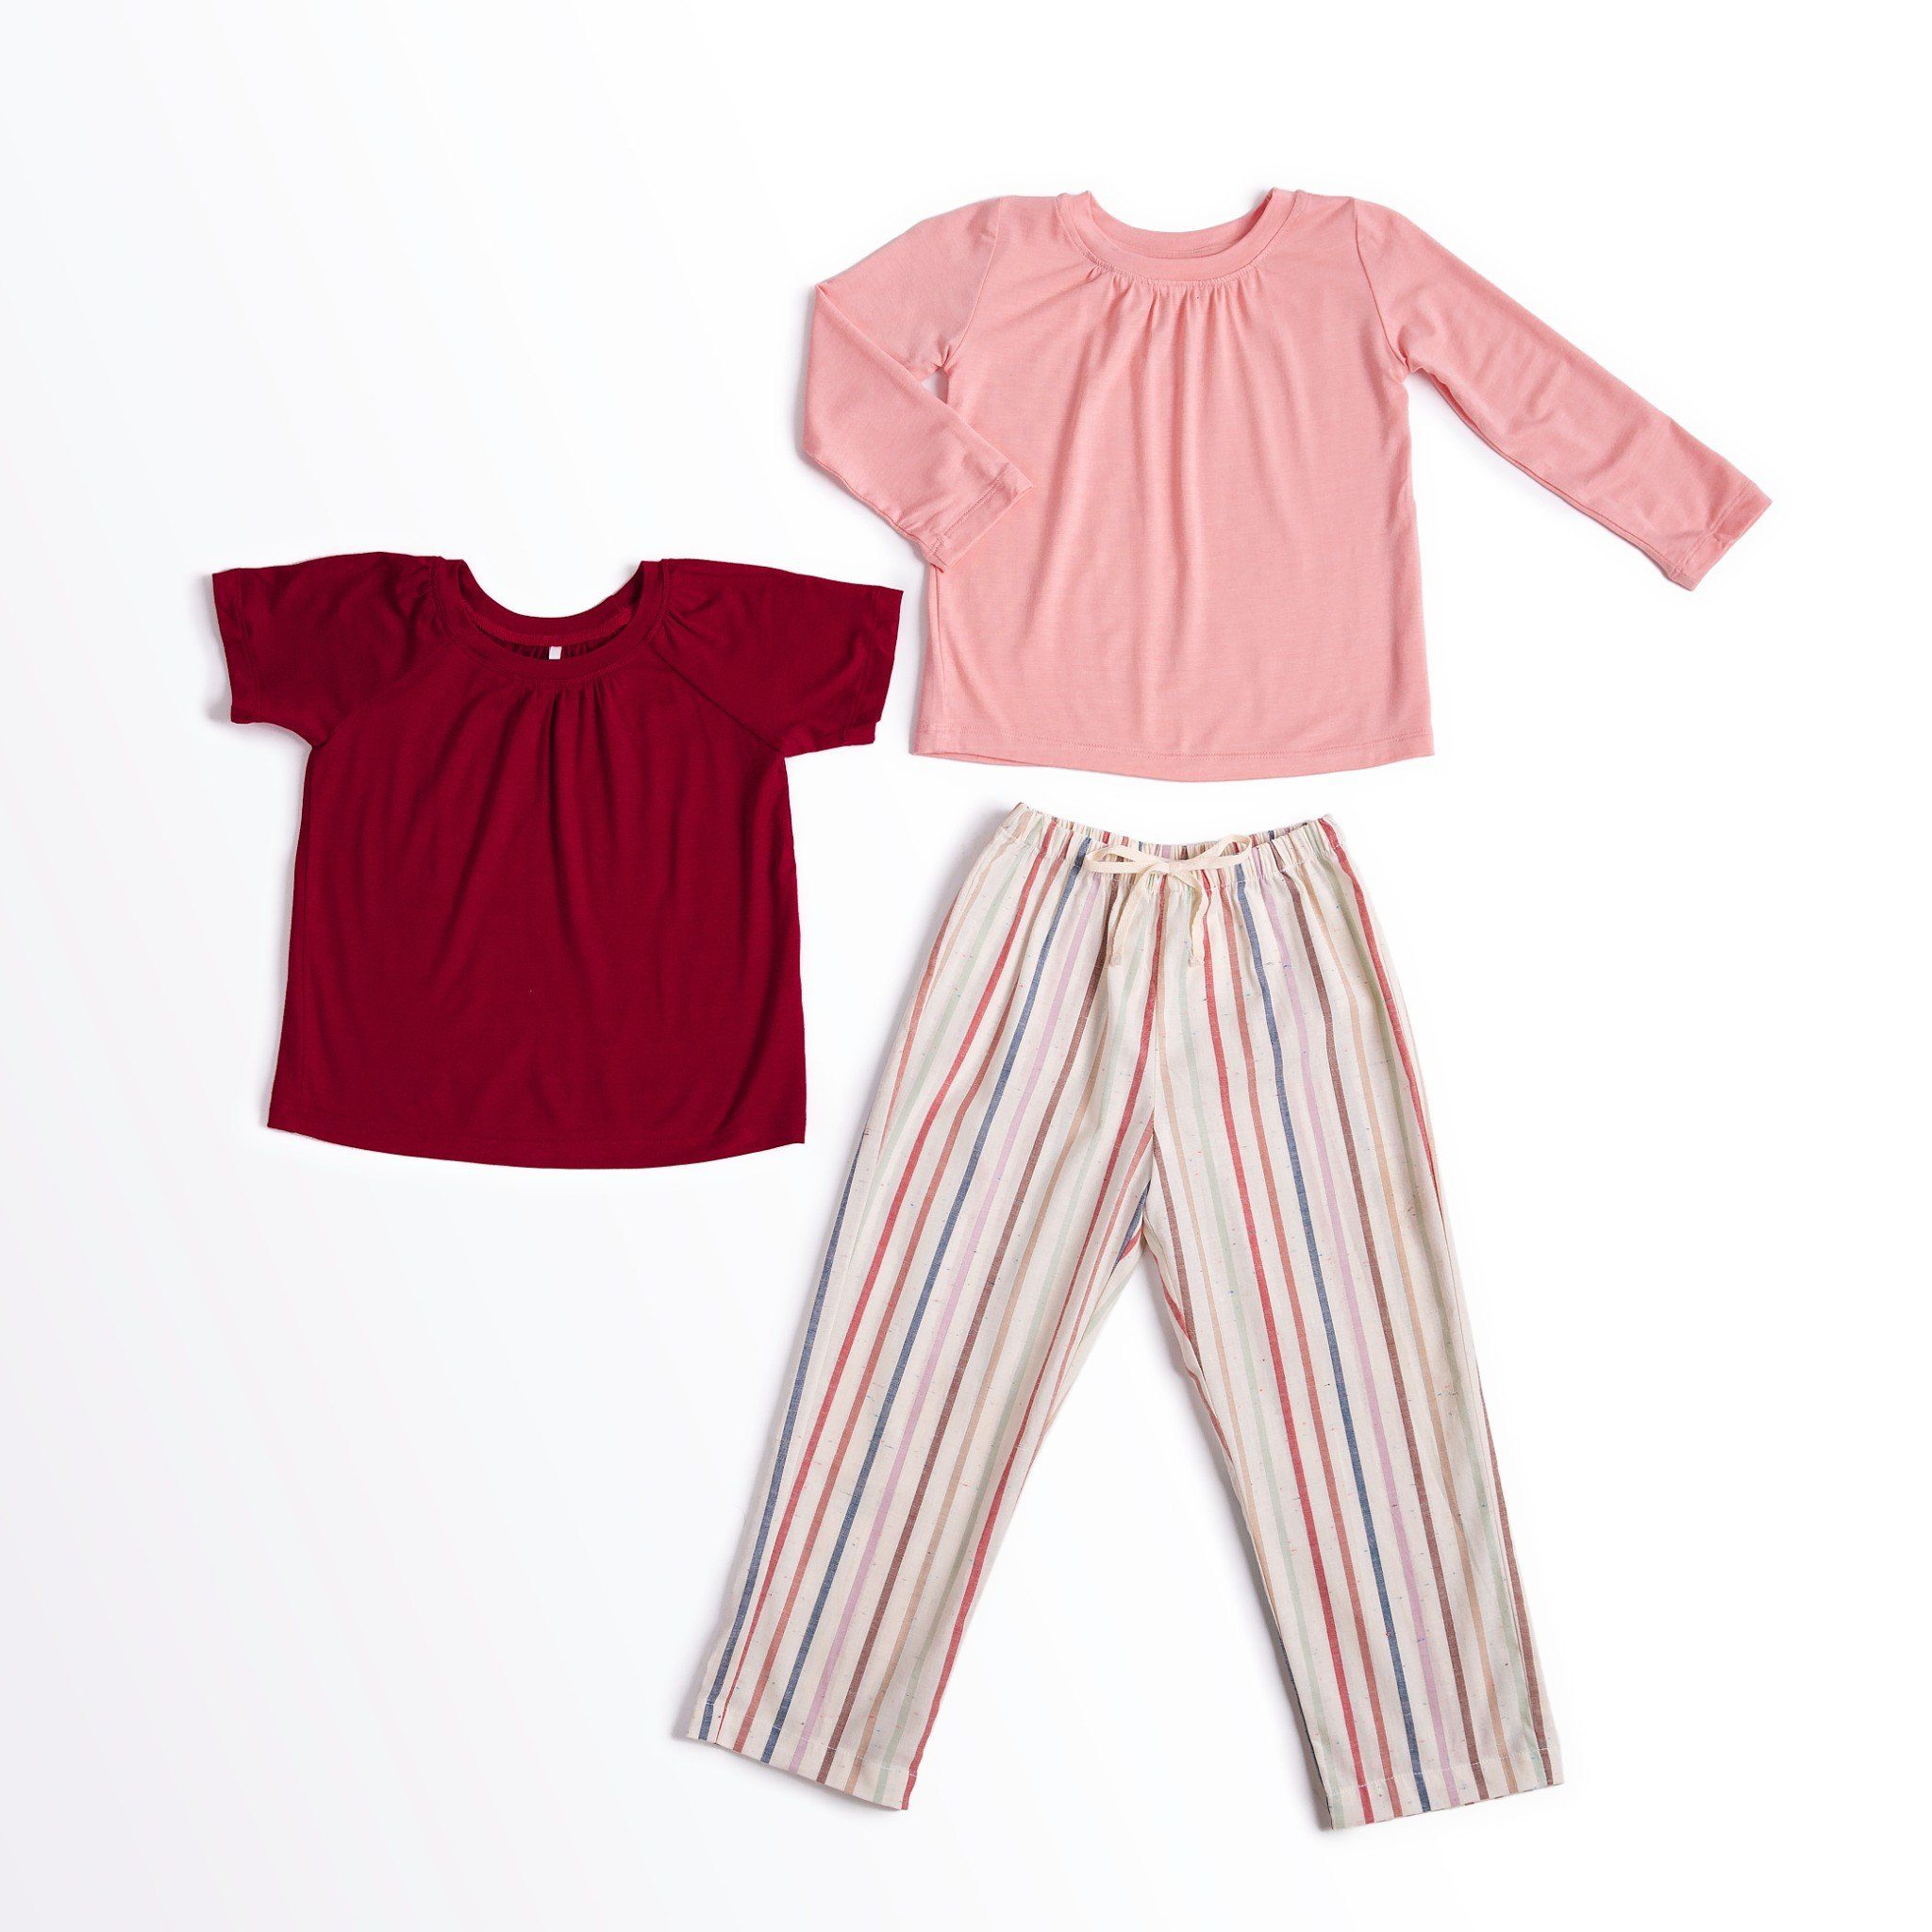  Bộ mặc nhà bé gái quần dài - Áo đỏ/hồng quần dài sọc nhiều màu 